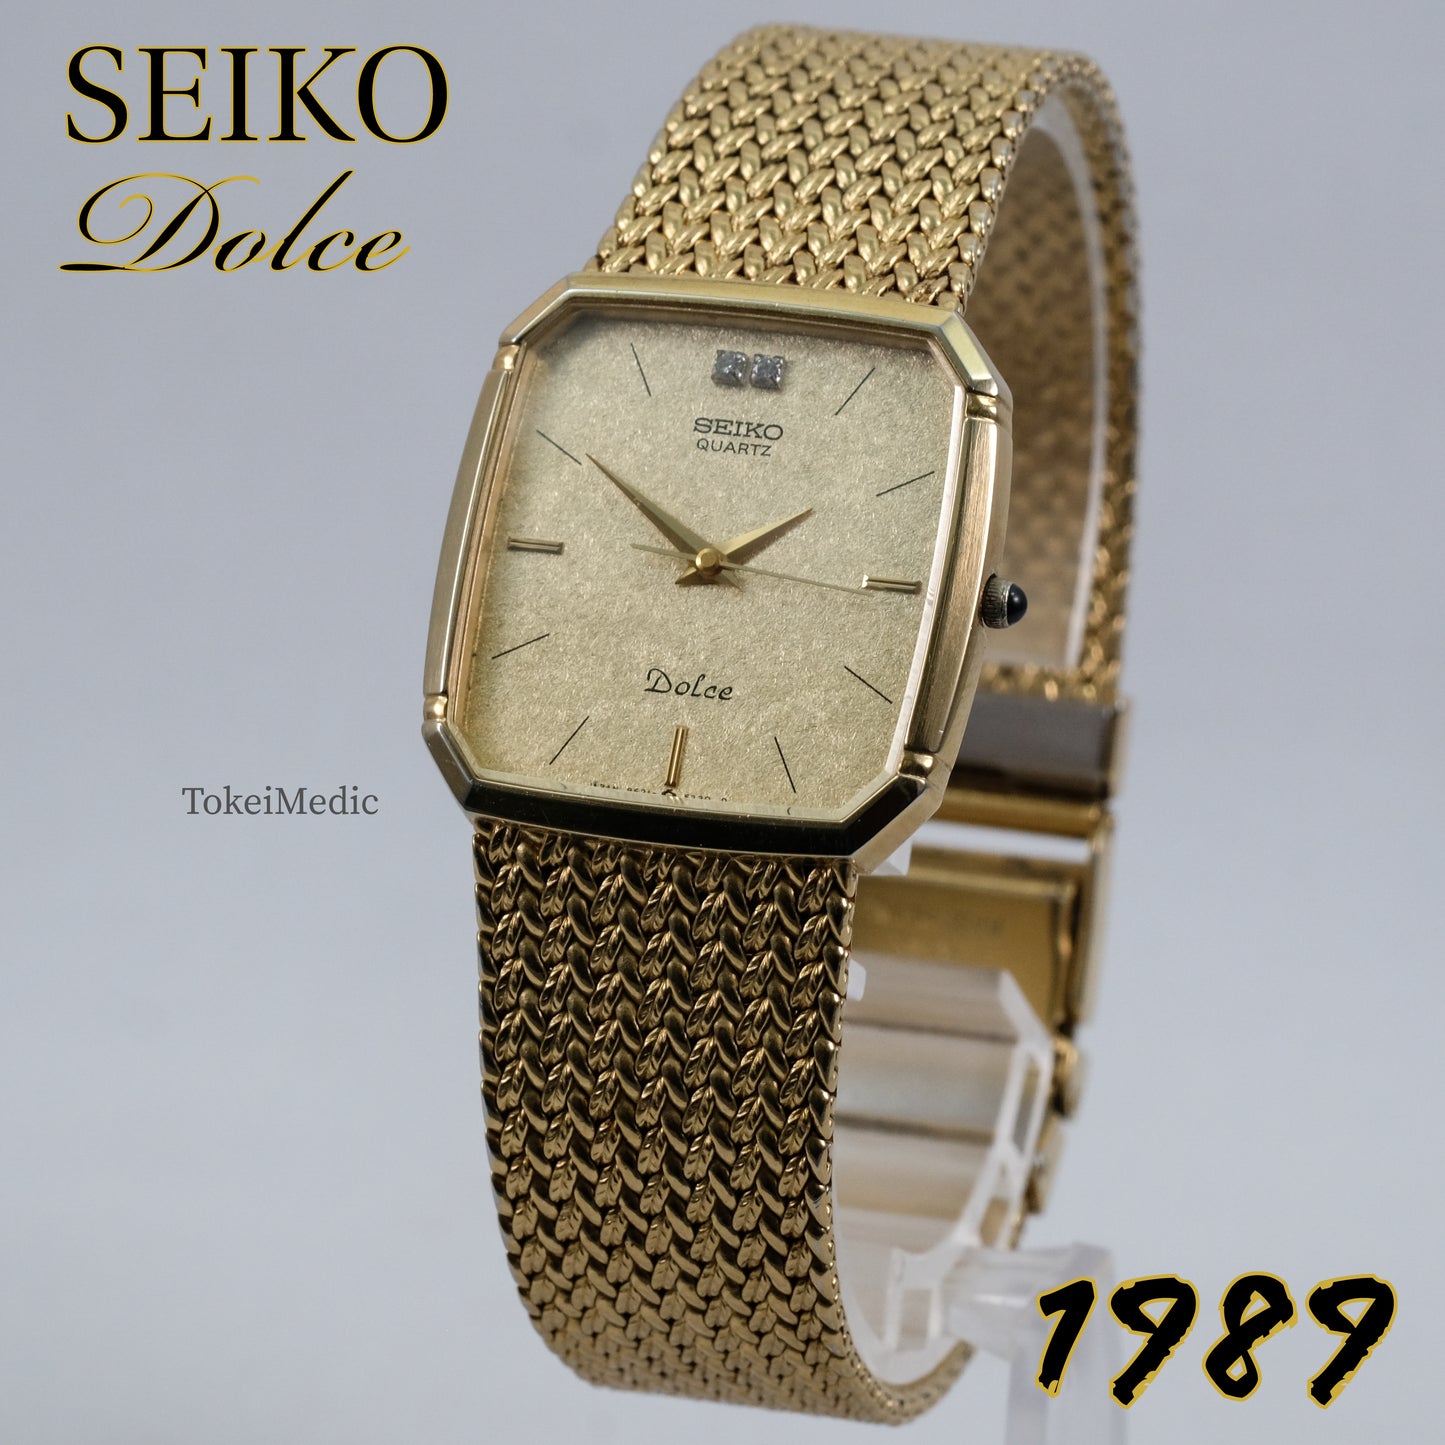 1989 Seiko Dolce 9521-5210